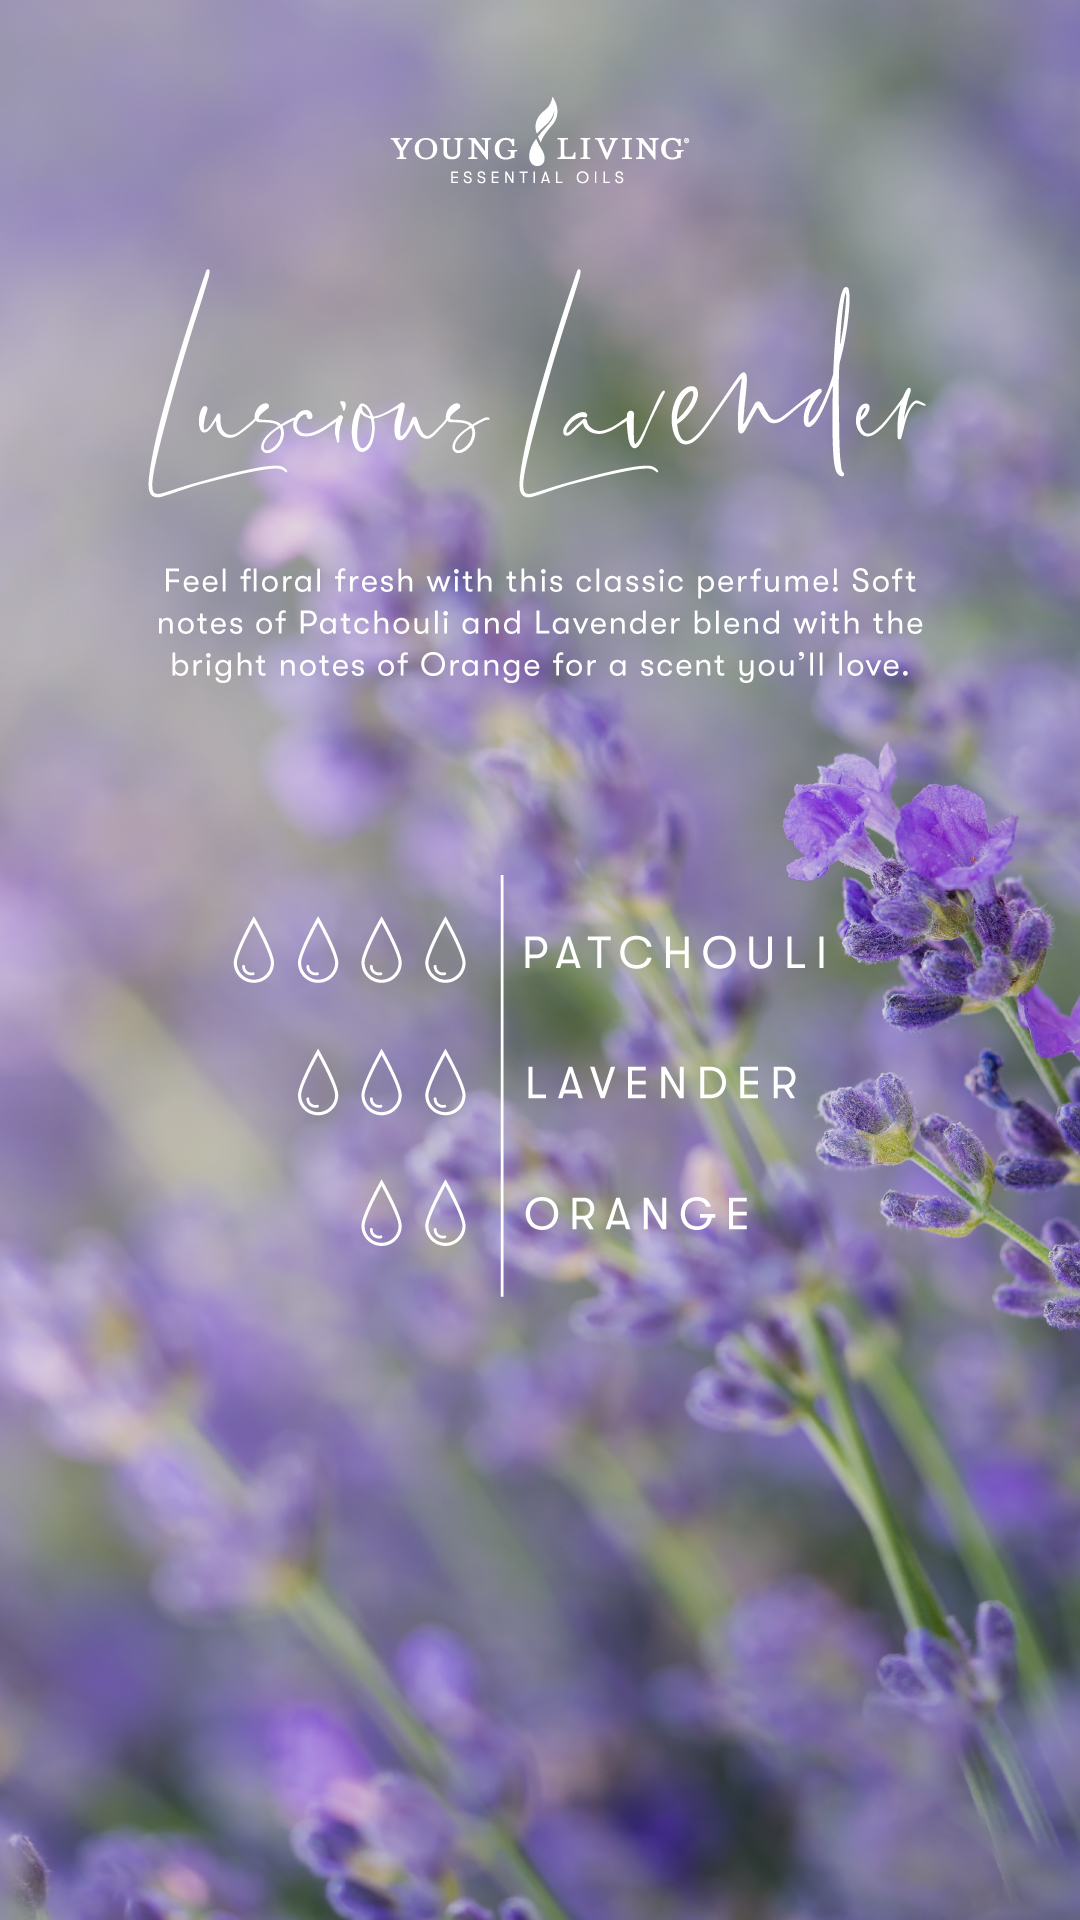 Luscious lavender Perfume Recipe